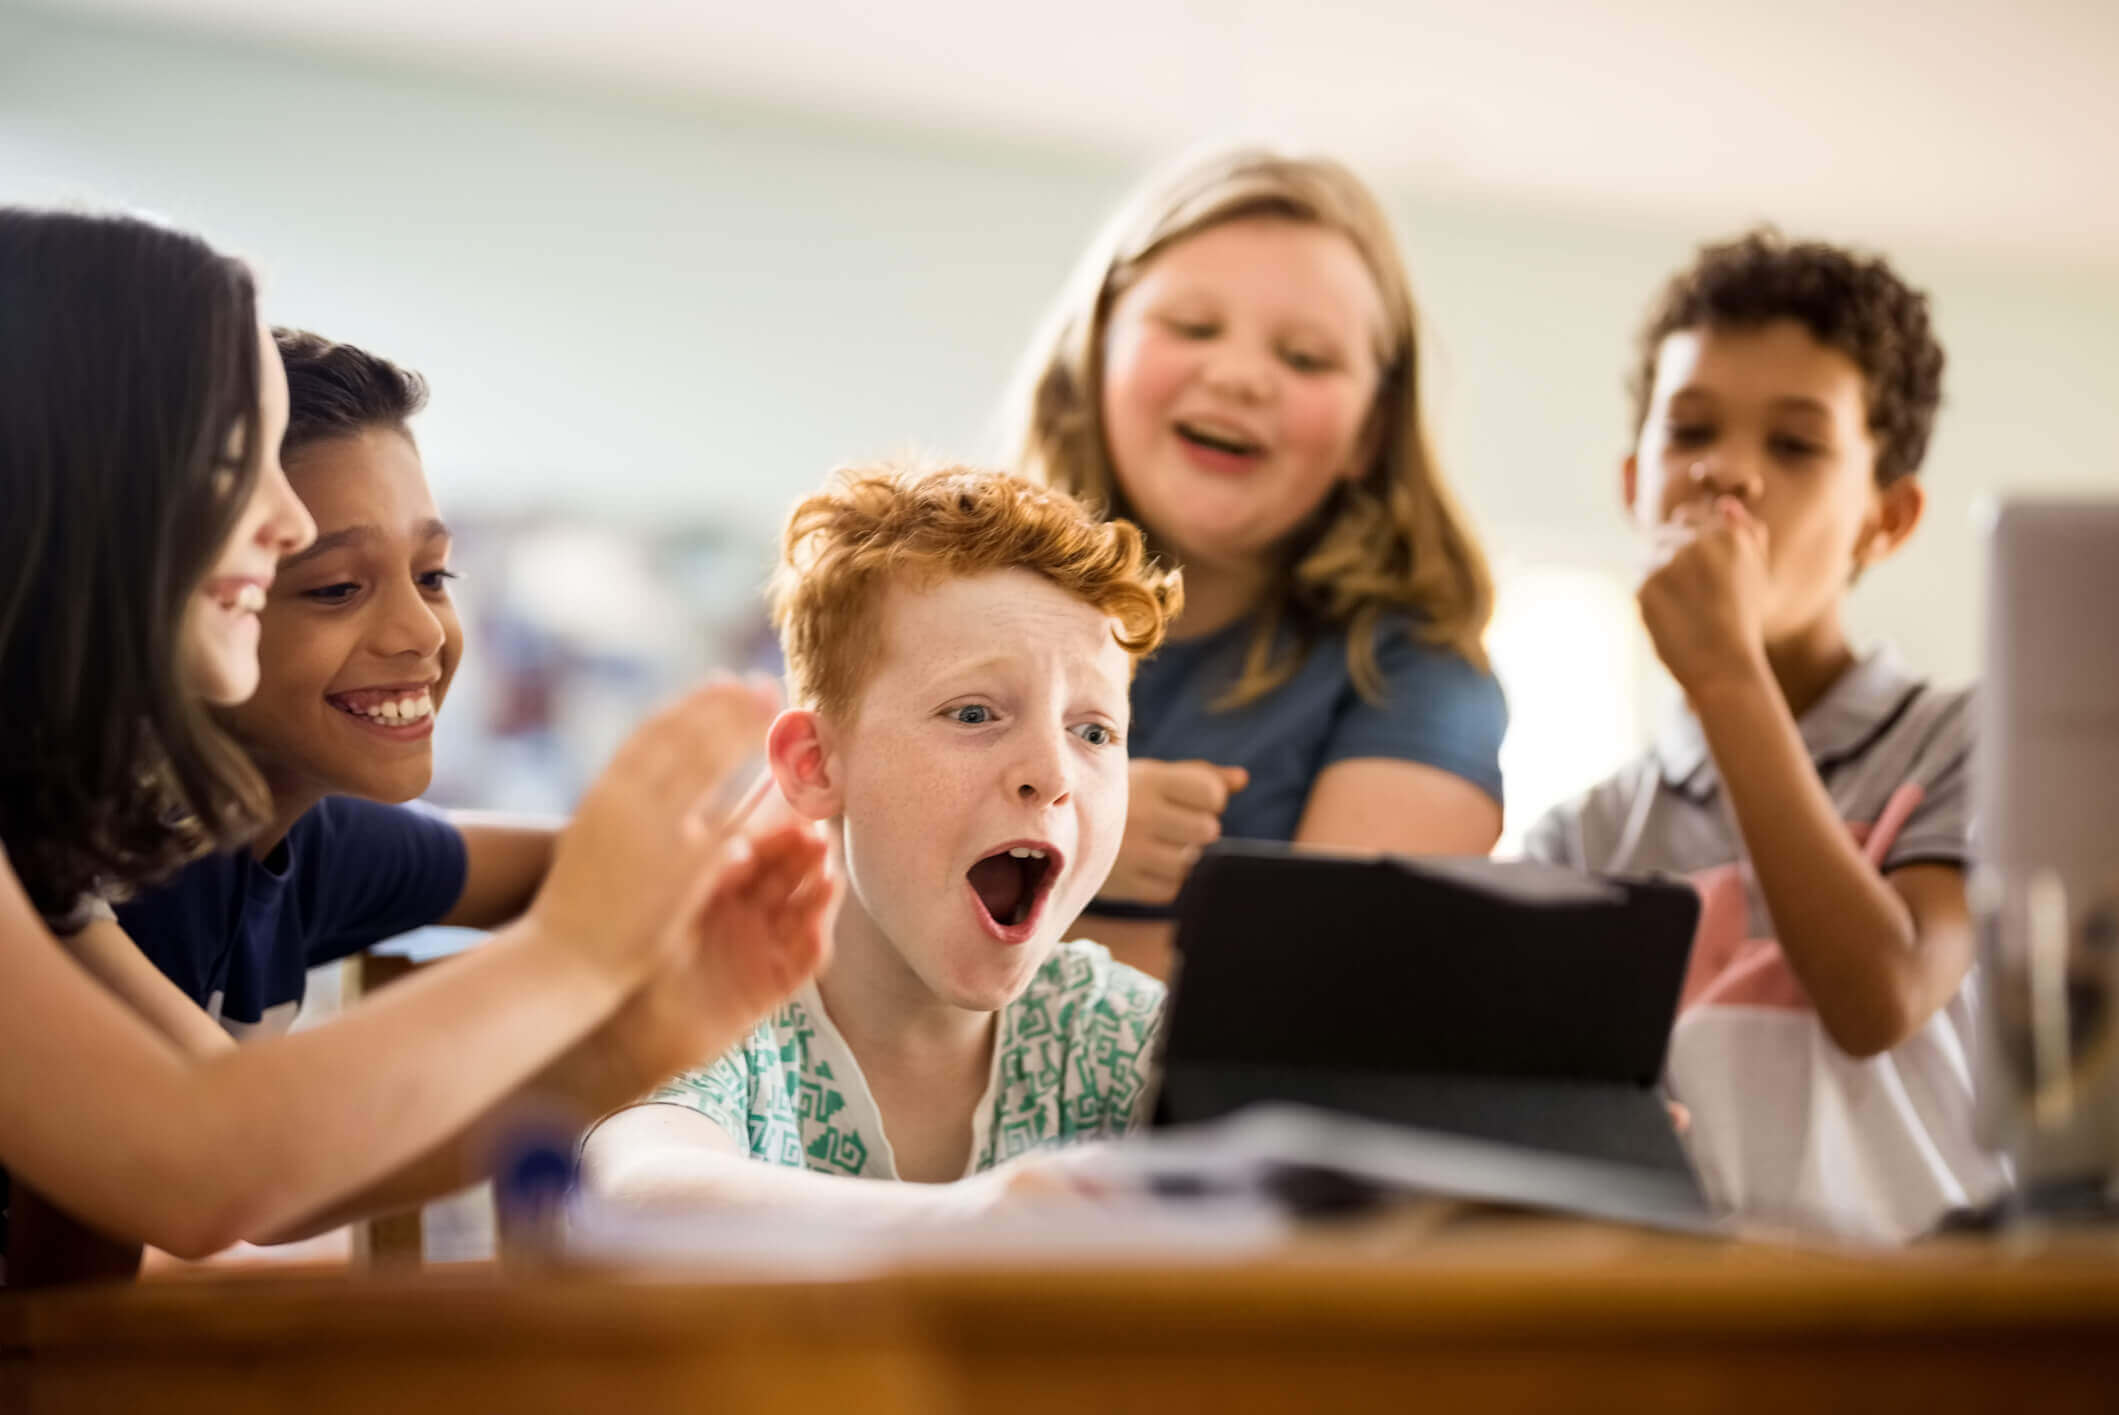 Il PNSD (Piano Nazionale Scuola Digitale) prevede inclusione digitale e ambienti di apprendimento innovativi